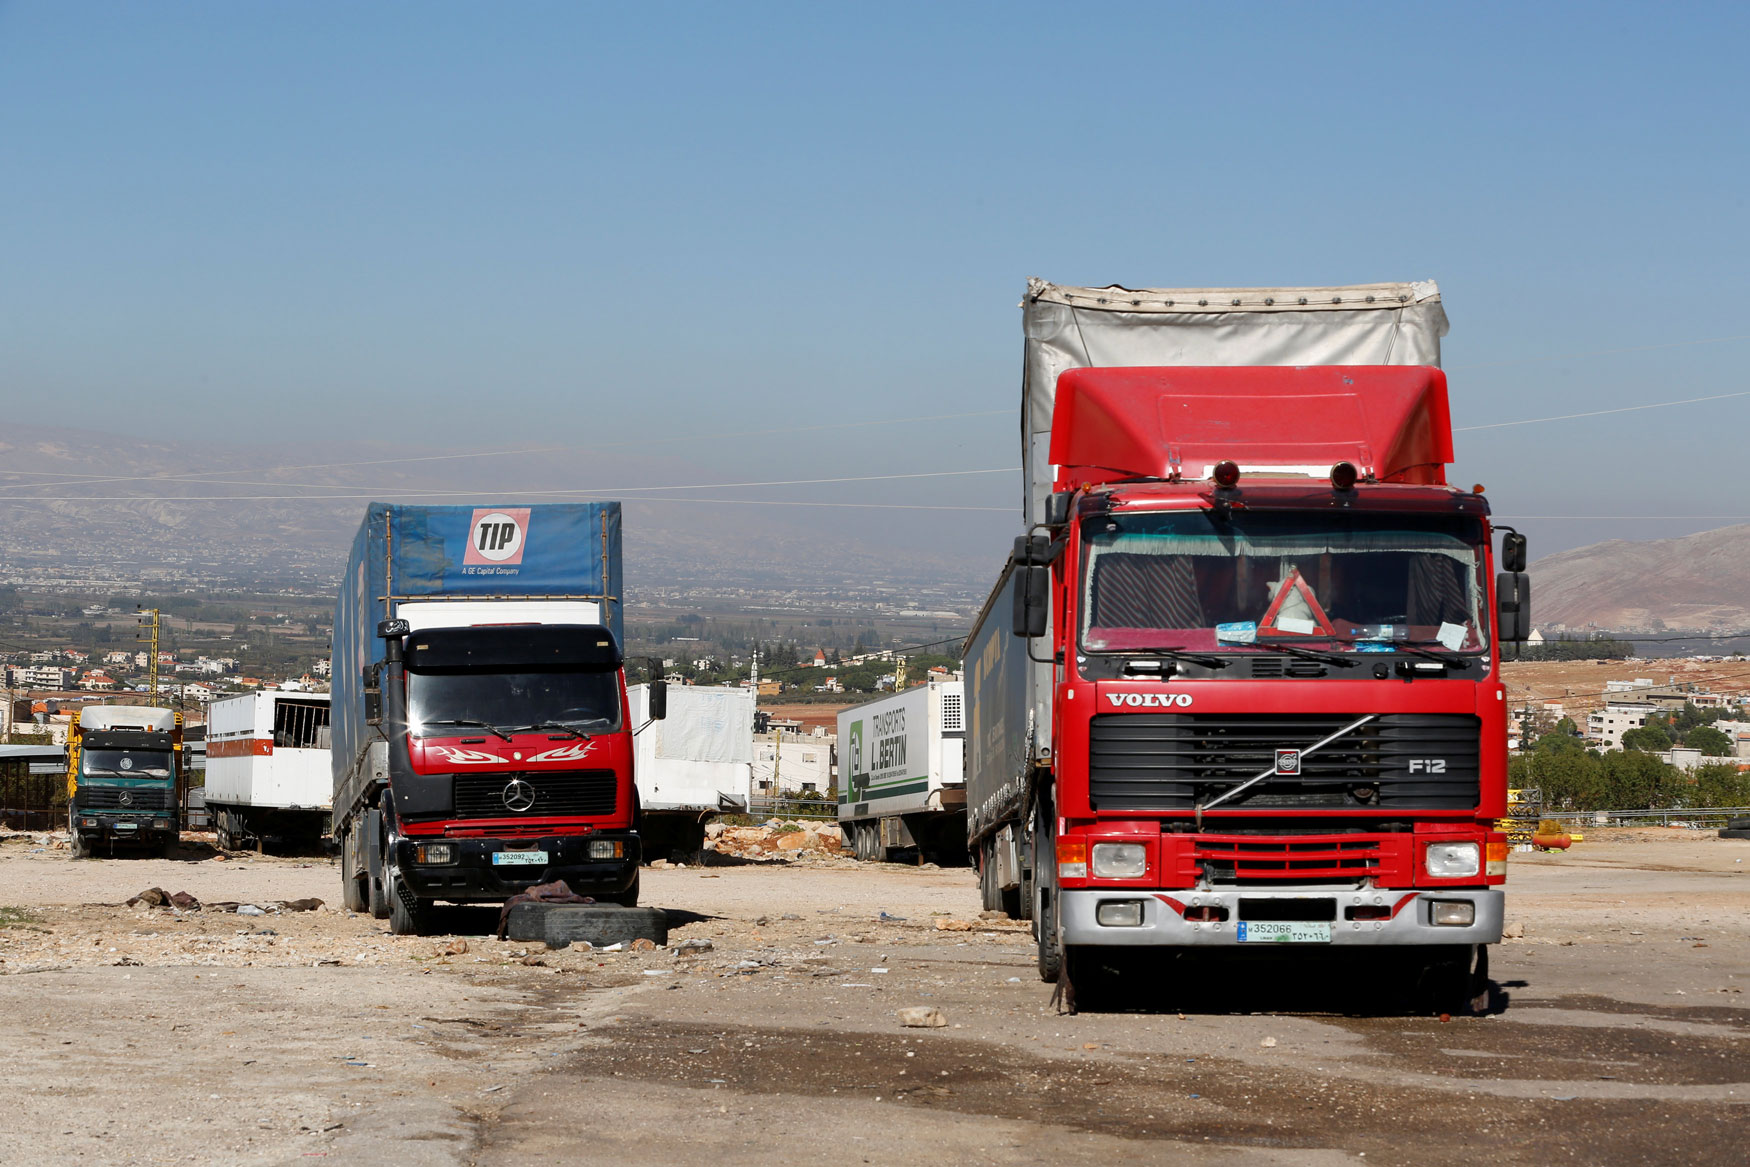 40 شاحنة فقط تدخل سوريا من لبنان يوميا مقارنة بما يصل إلى 400 شاحنة قبل 2011